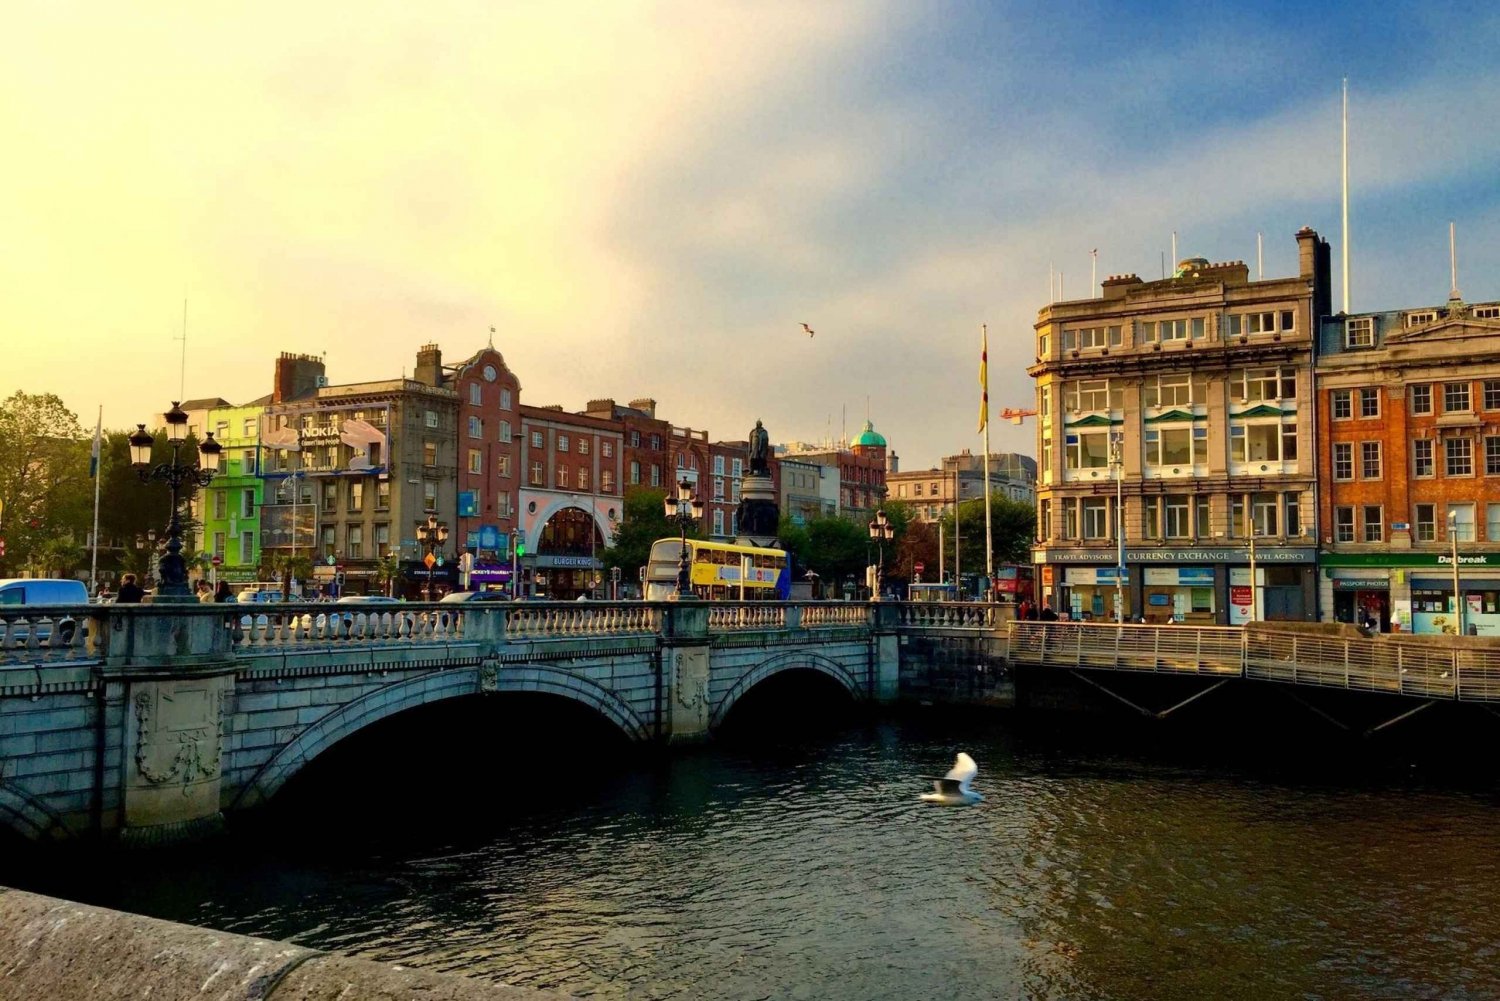 Dublín: Tour privado de arquitectura con un experto local